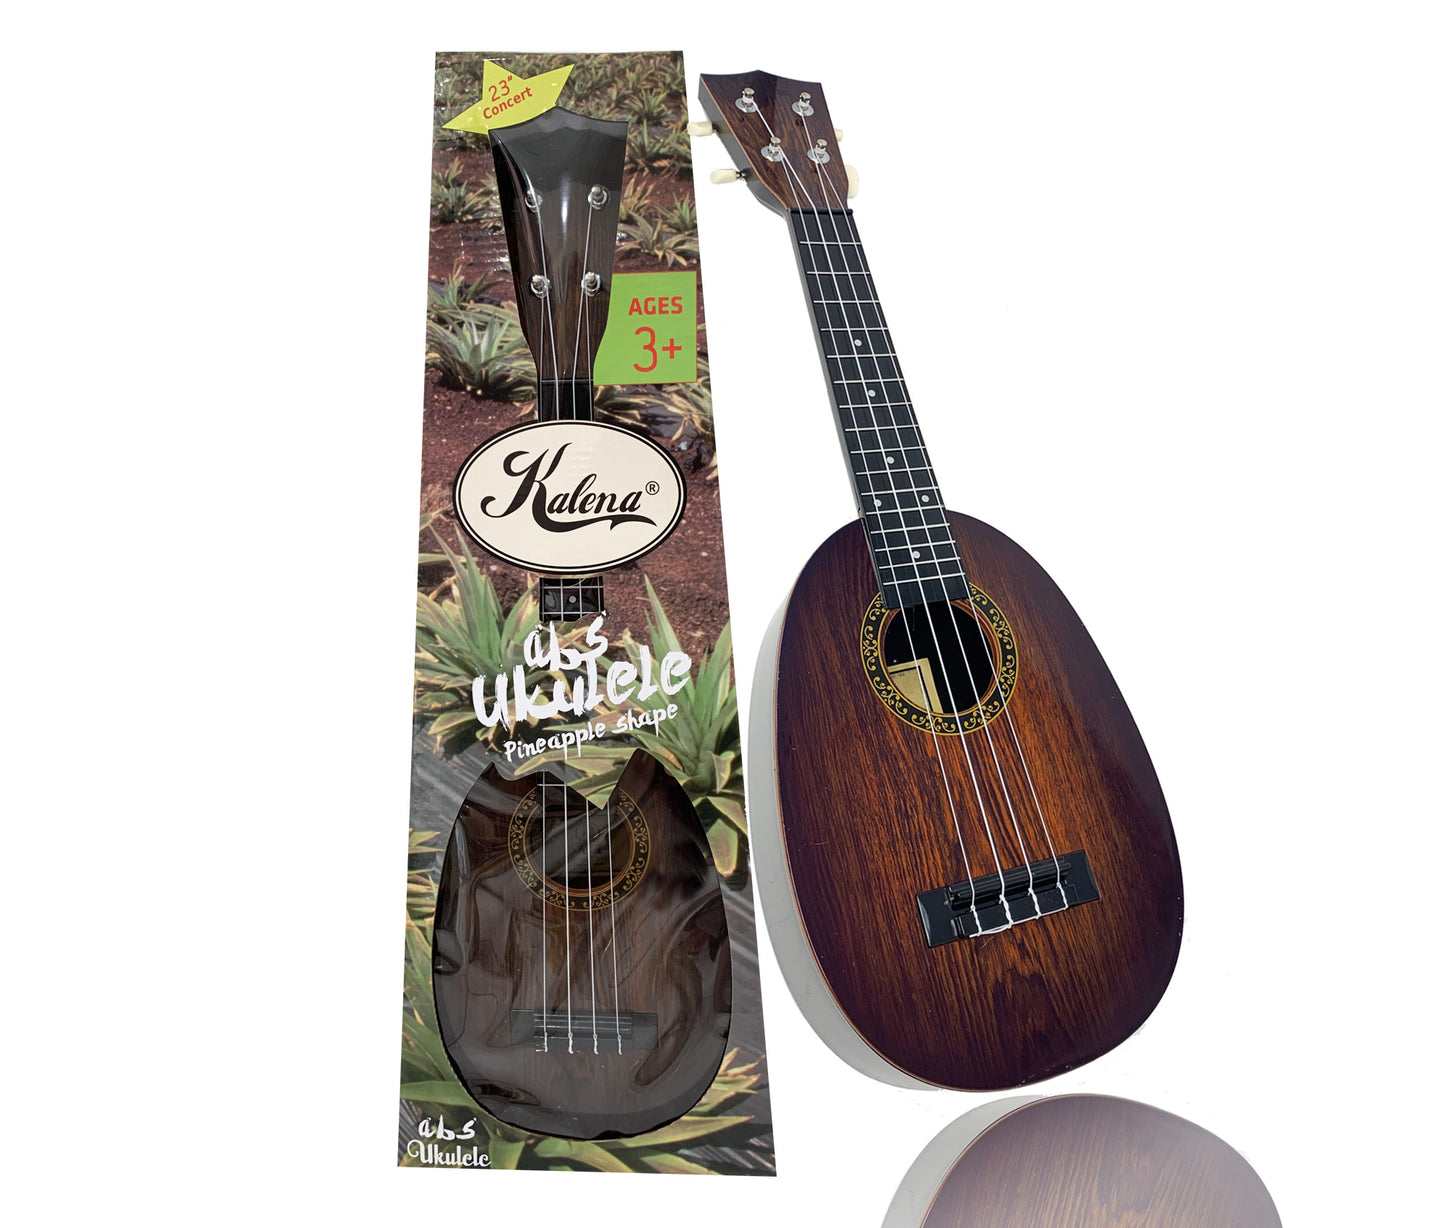 Kalena ABS Pineapple 23” Concert Ukulele with padded case - Kalena Instruments / Ebony ABS